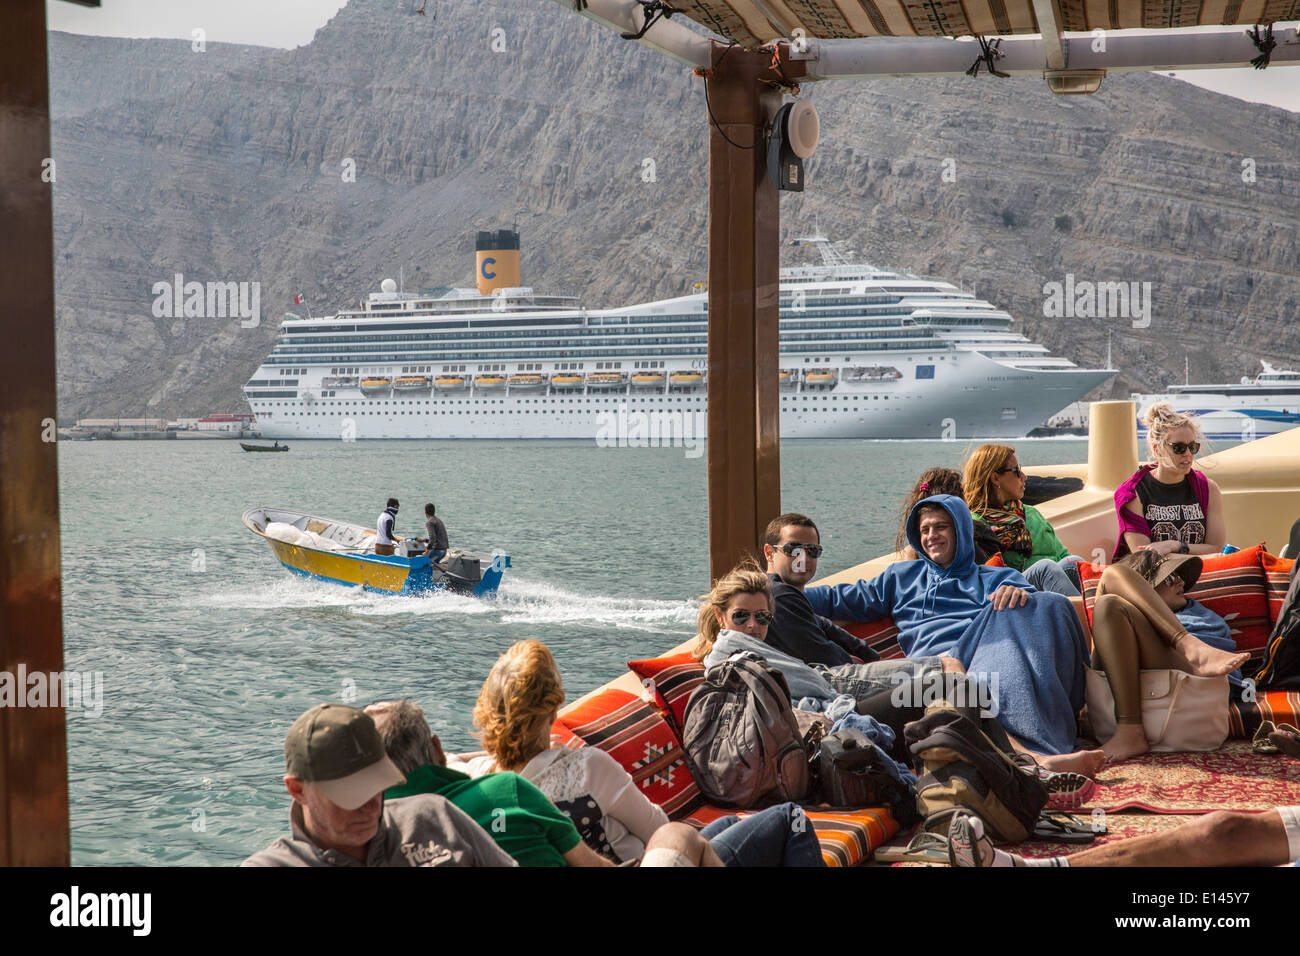 Oman, Khasab, Hafen, iranische Schmuggler bringen waren zurück in den Iran mit kleinen Booten. Touristen auf Bogen. Kreuzfahrtschiff Costa Fortuna Stockfoto